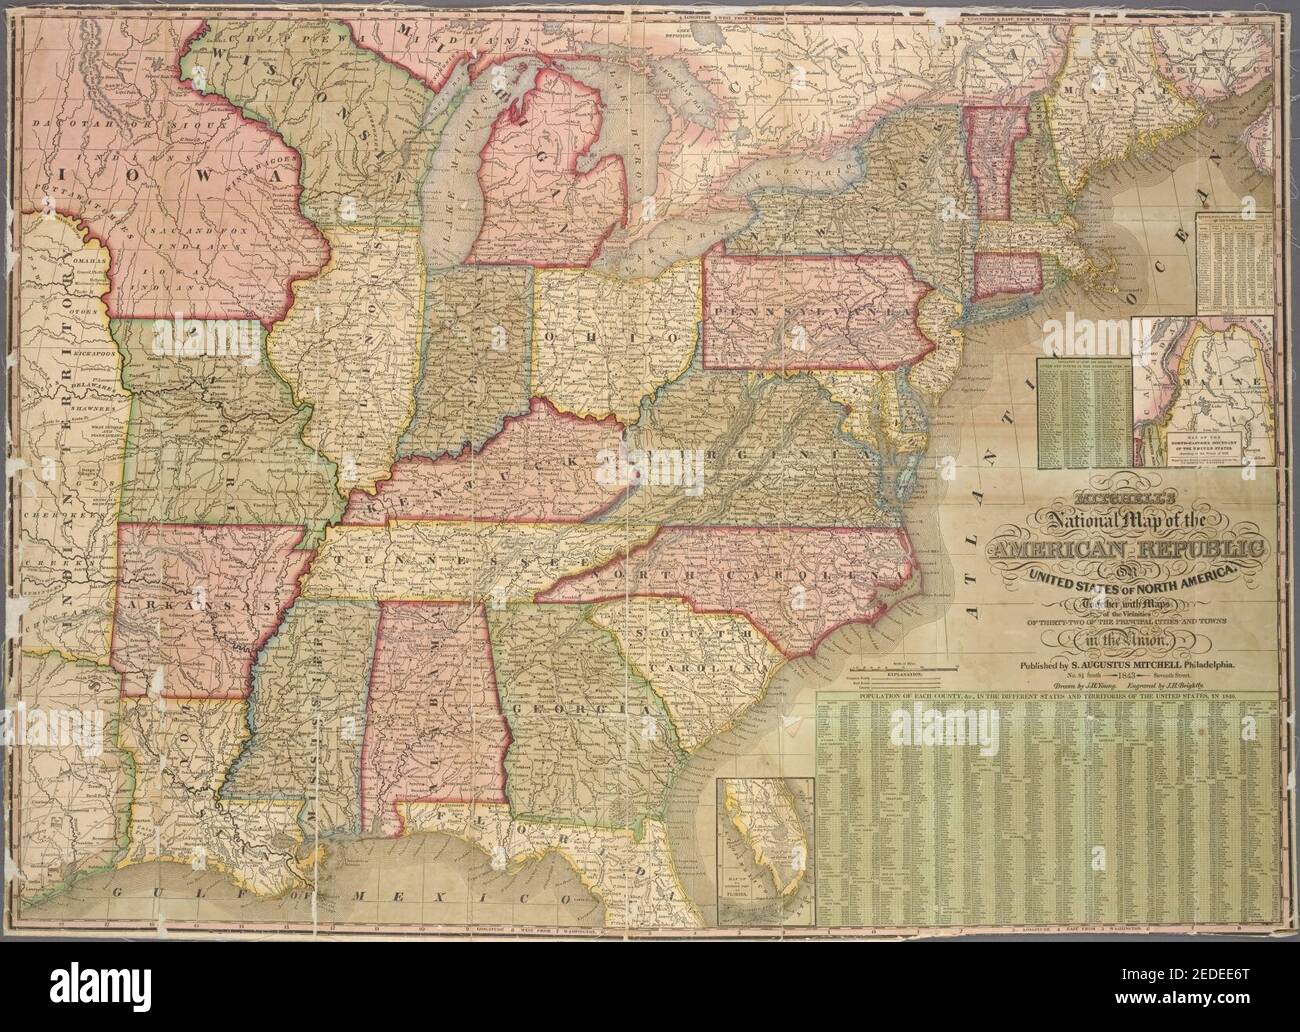 Mitchells Nationalkarte der Amerikanischen Republik - oder der Vereinigten Staaten von Nordamerika, zusammen mit Karten der Umgebungen von zweiunddreißig der wichtigsten Städte und Städte in der Union Stockfoto